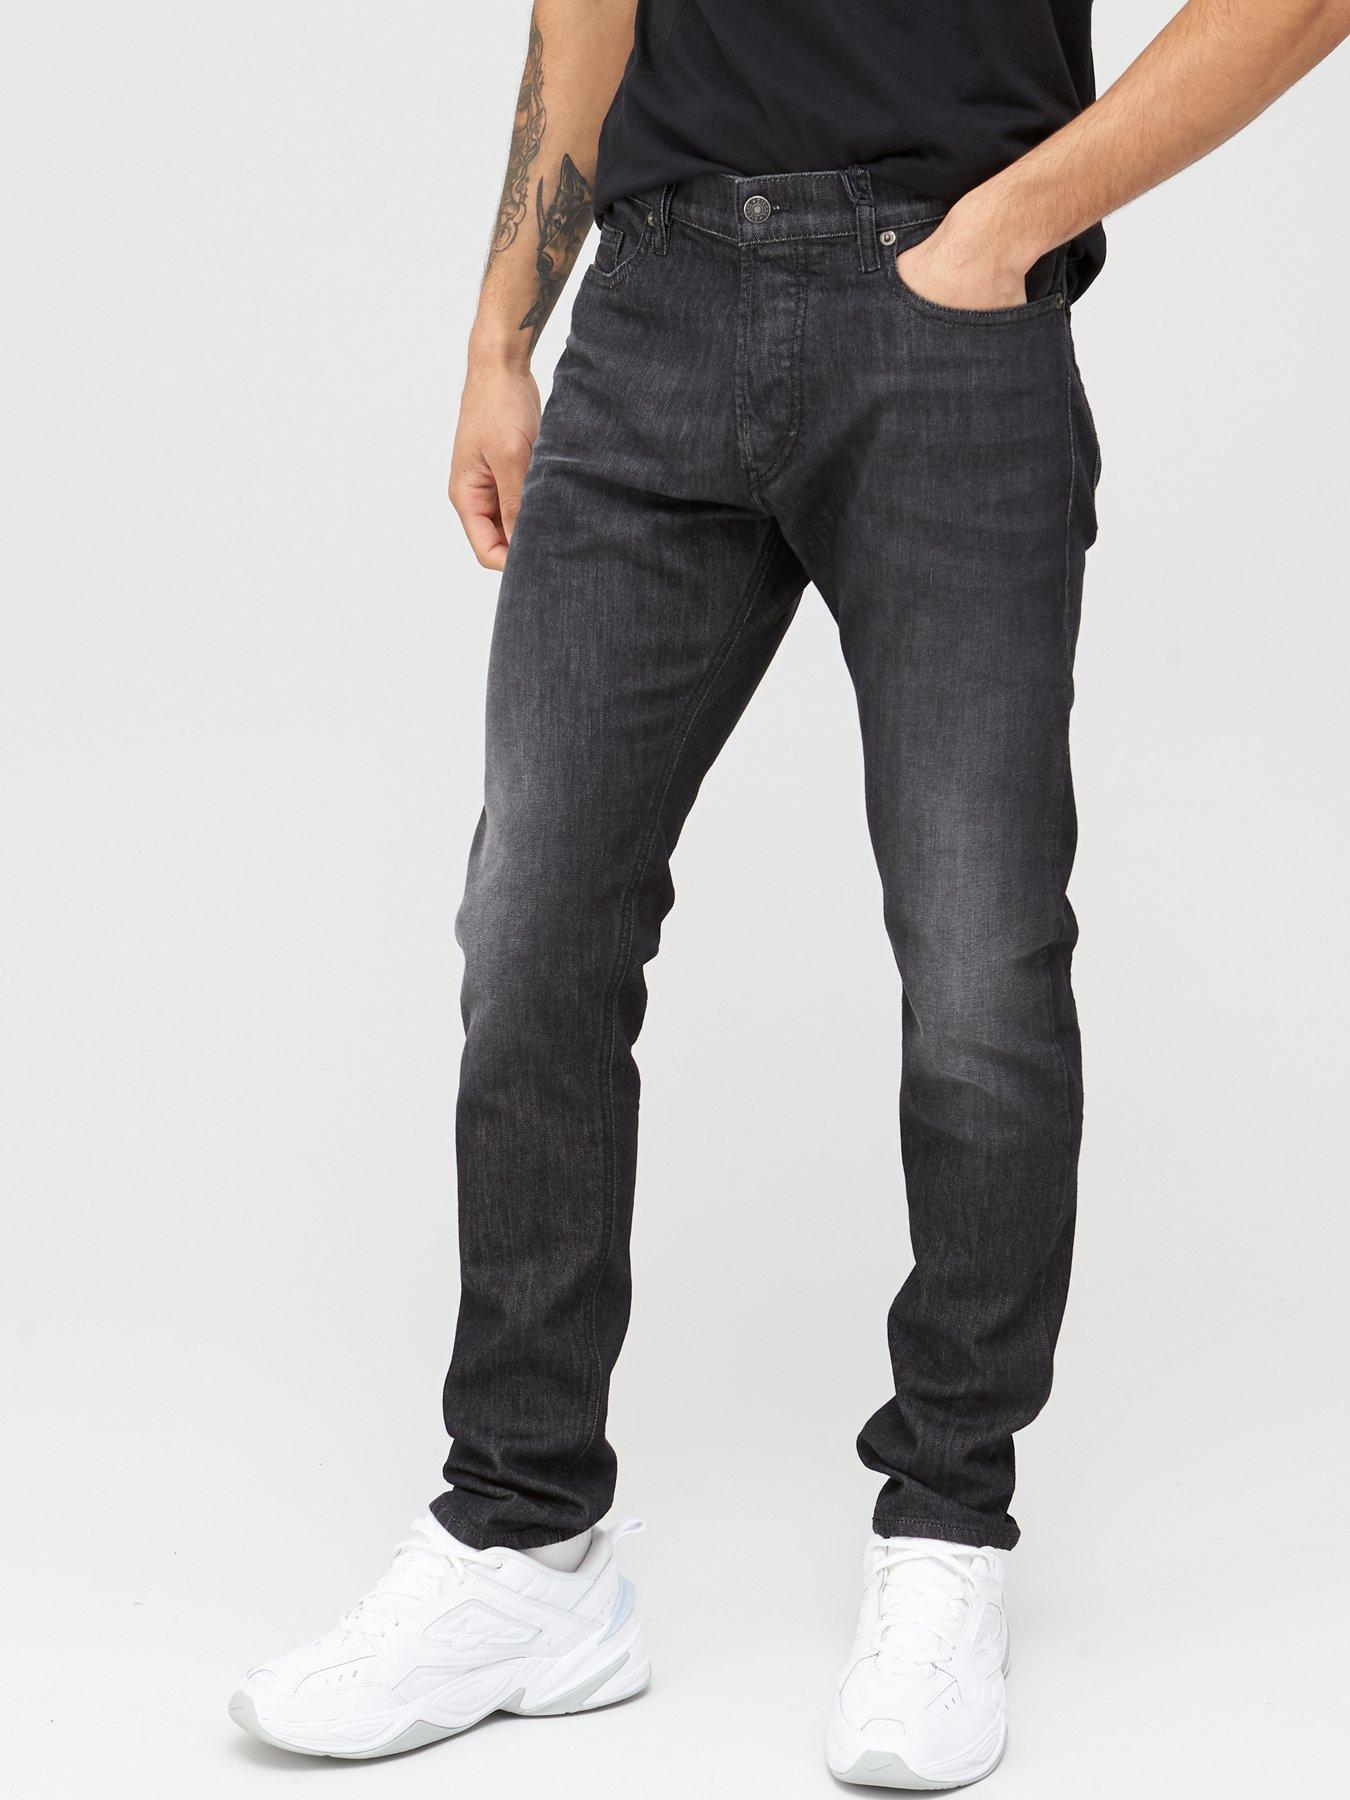 men's diesel black slim fit jeans